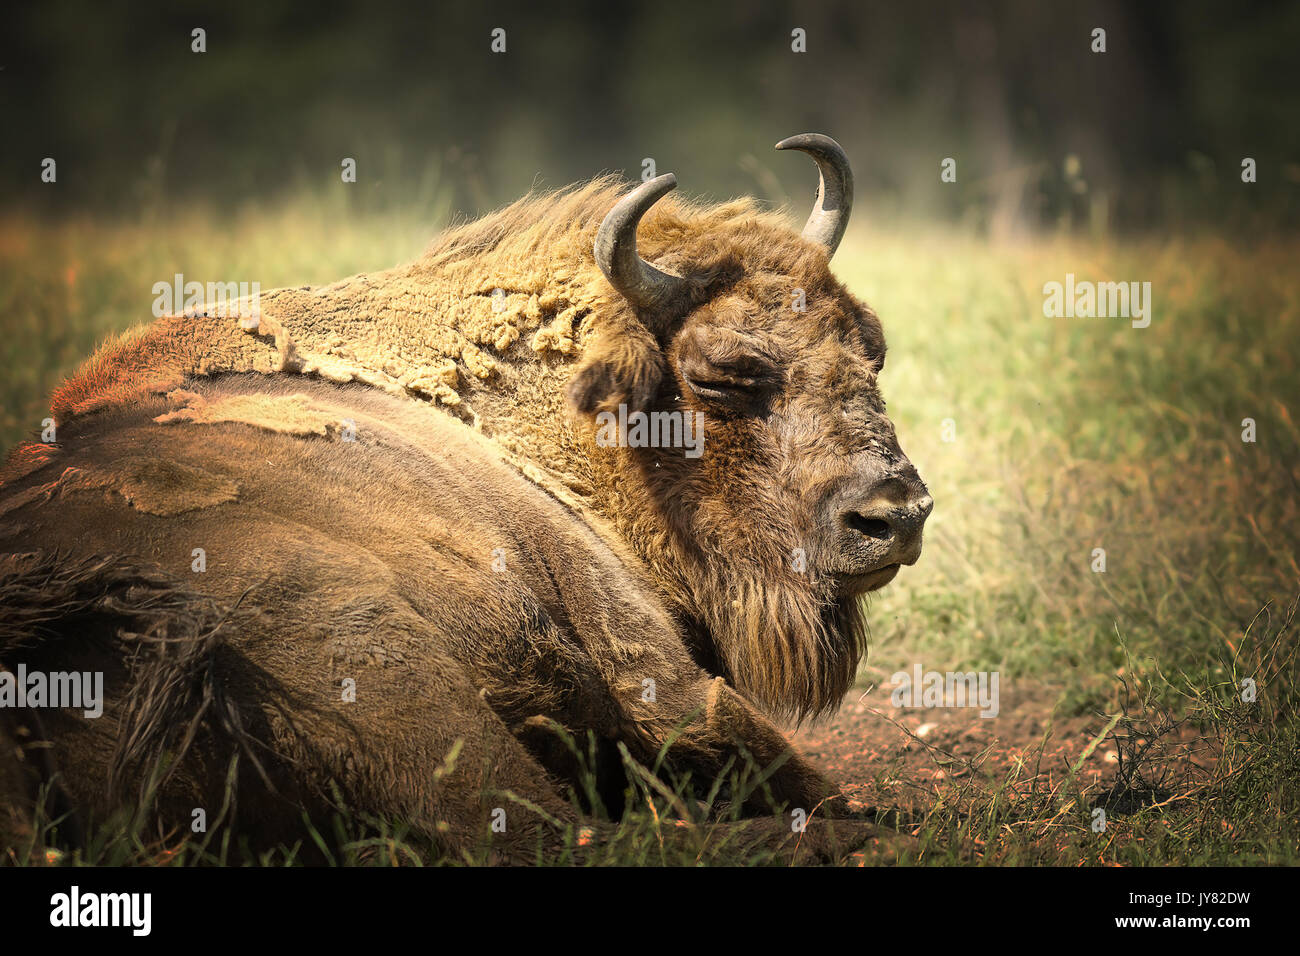 Grande bisonte europeo in appoggio sul terreno, in prossimità di grandi bull ( Bison bonasus ) Foto Stock